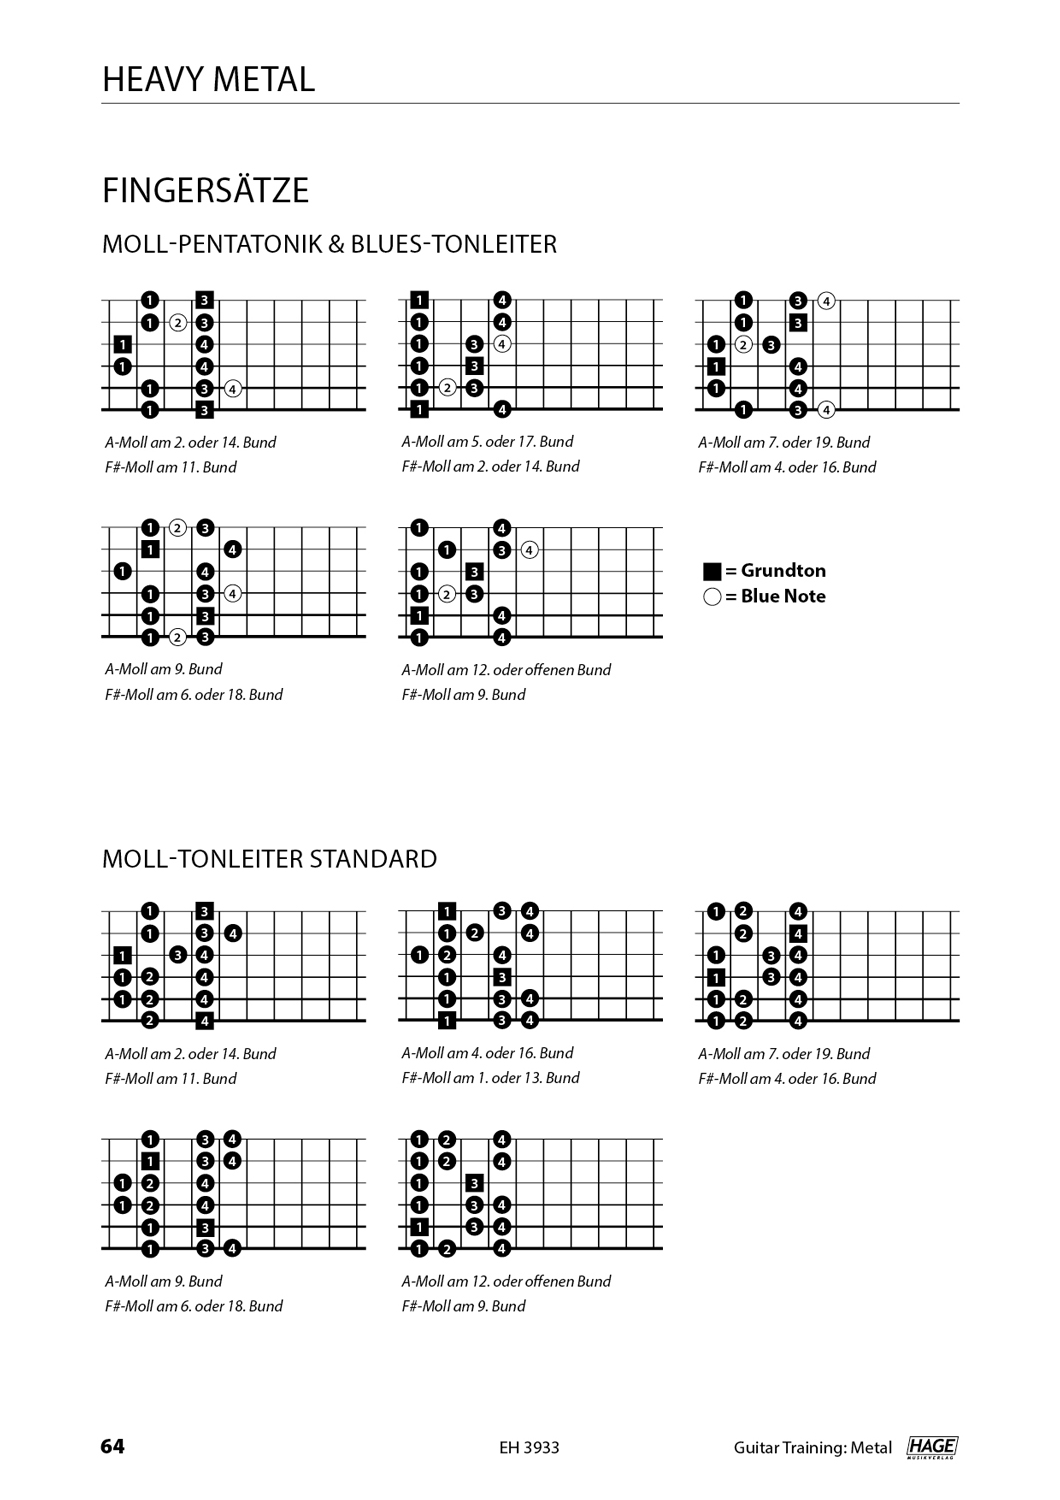 Guitar Training Metal (mit QR-Codes) Seiten 9